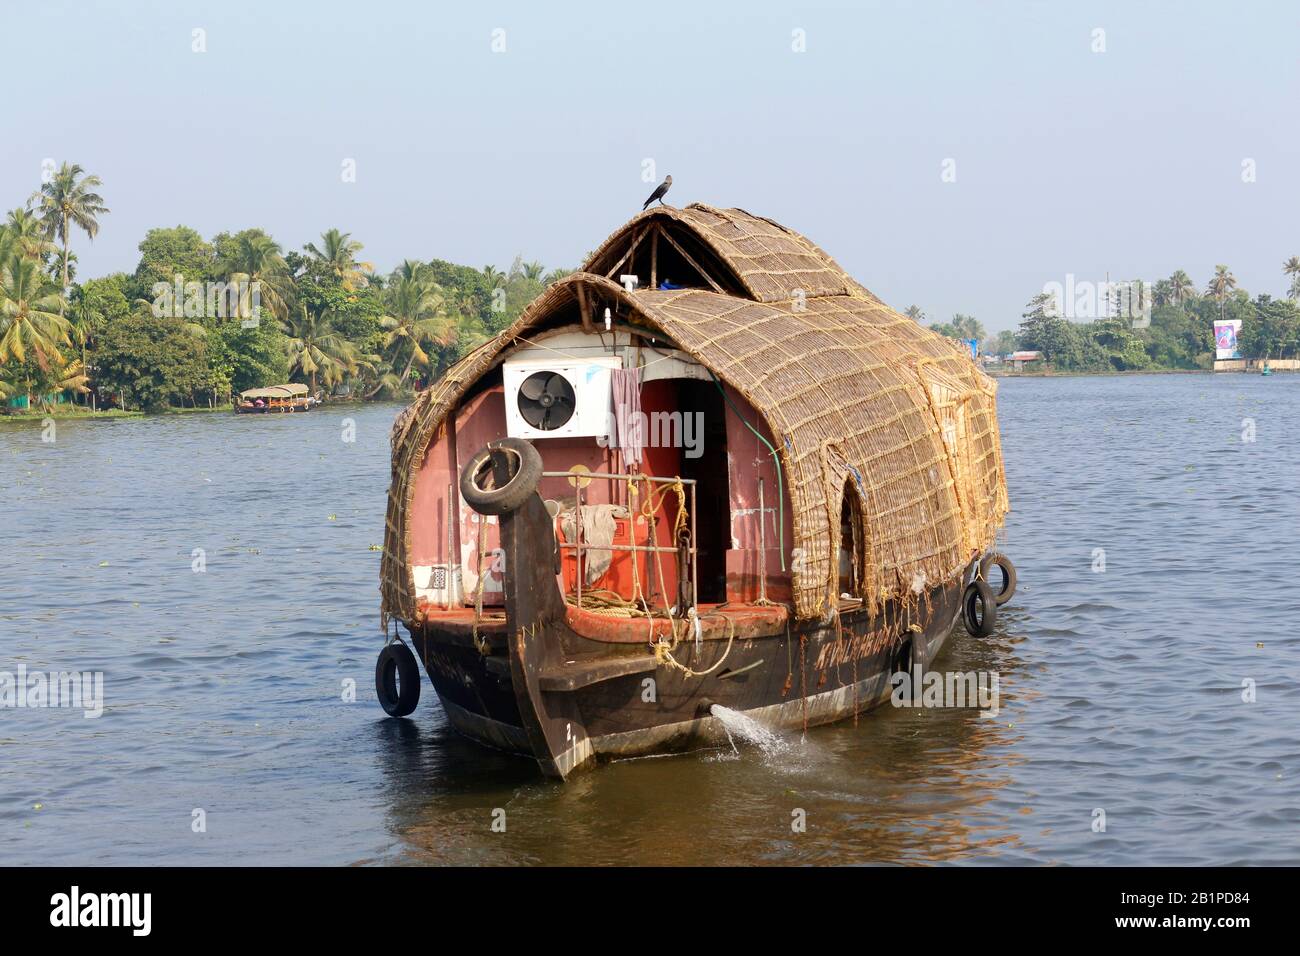 House boat, Allepey, Kerala, India Stock Photo